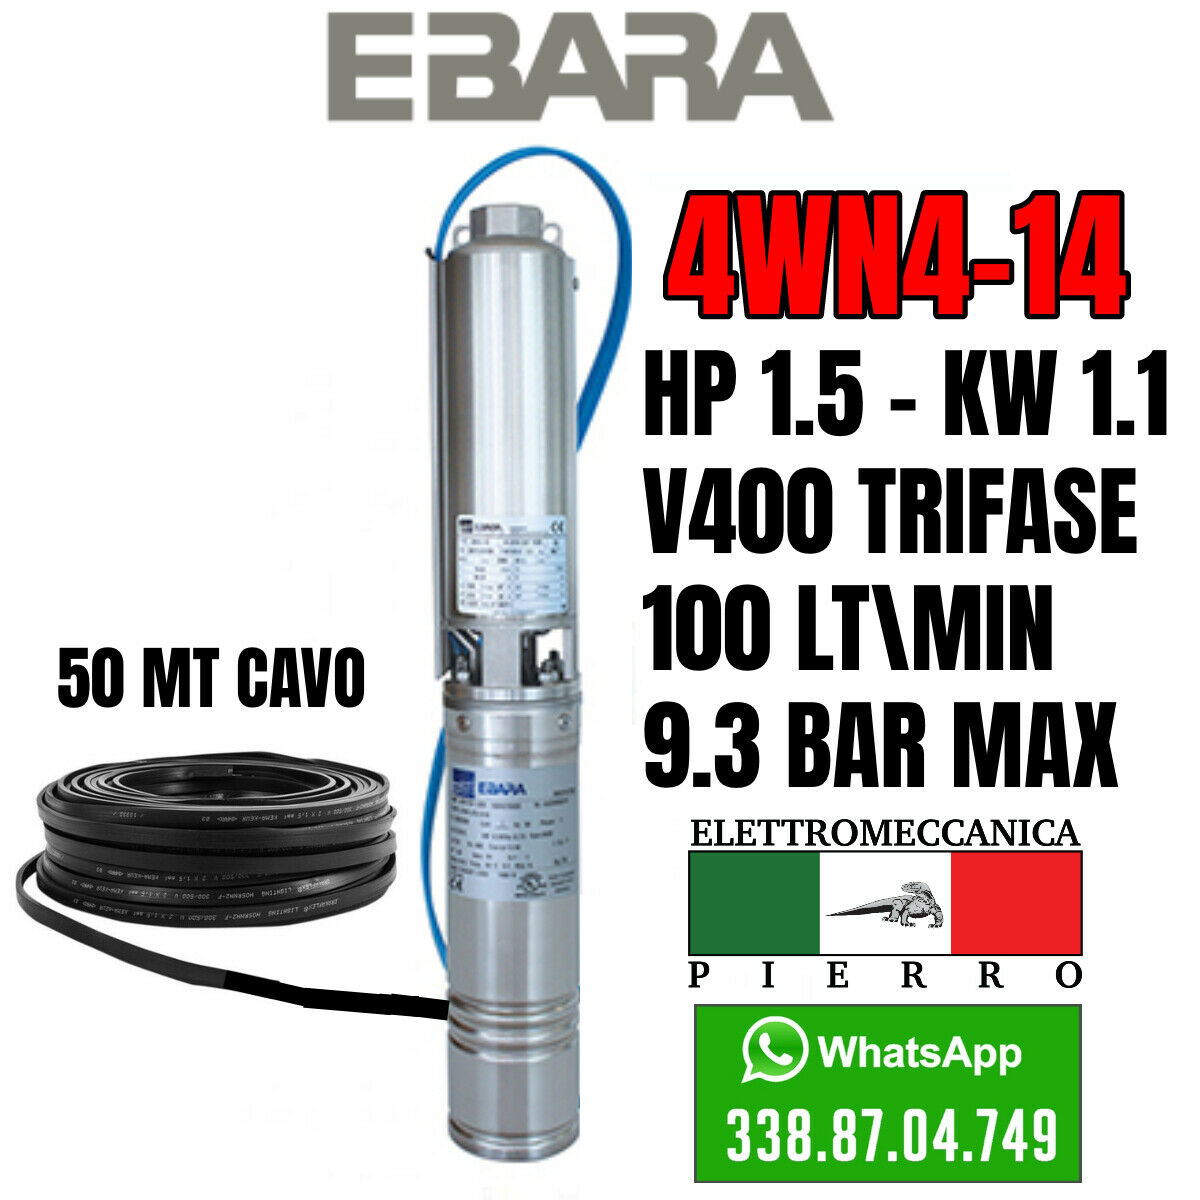 miniatura 26  - POMPA SOMMERSA EBARA 4WN4-14 HP1.5 100LT/MIN 9.3BAR MAX 4GS11 LOWARA COMPATIBILE